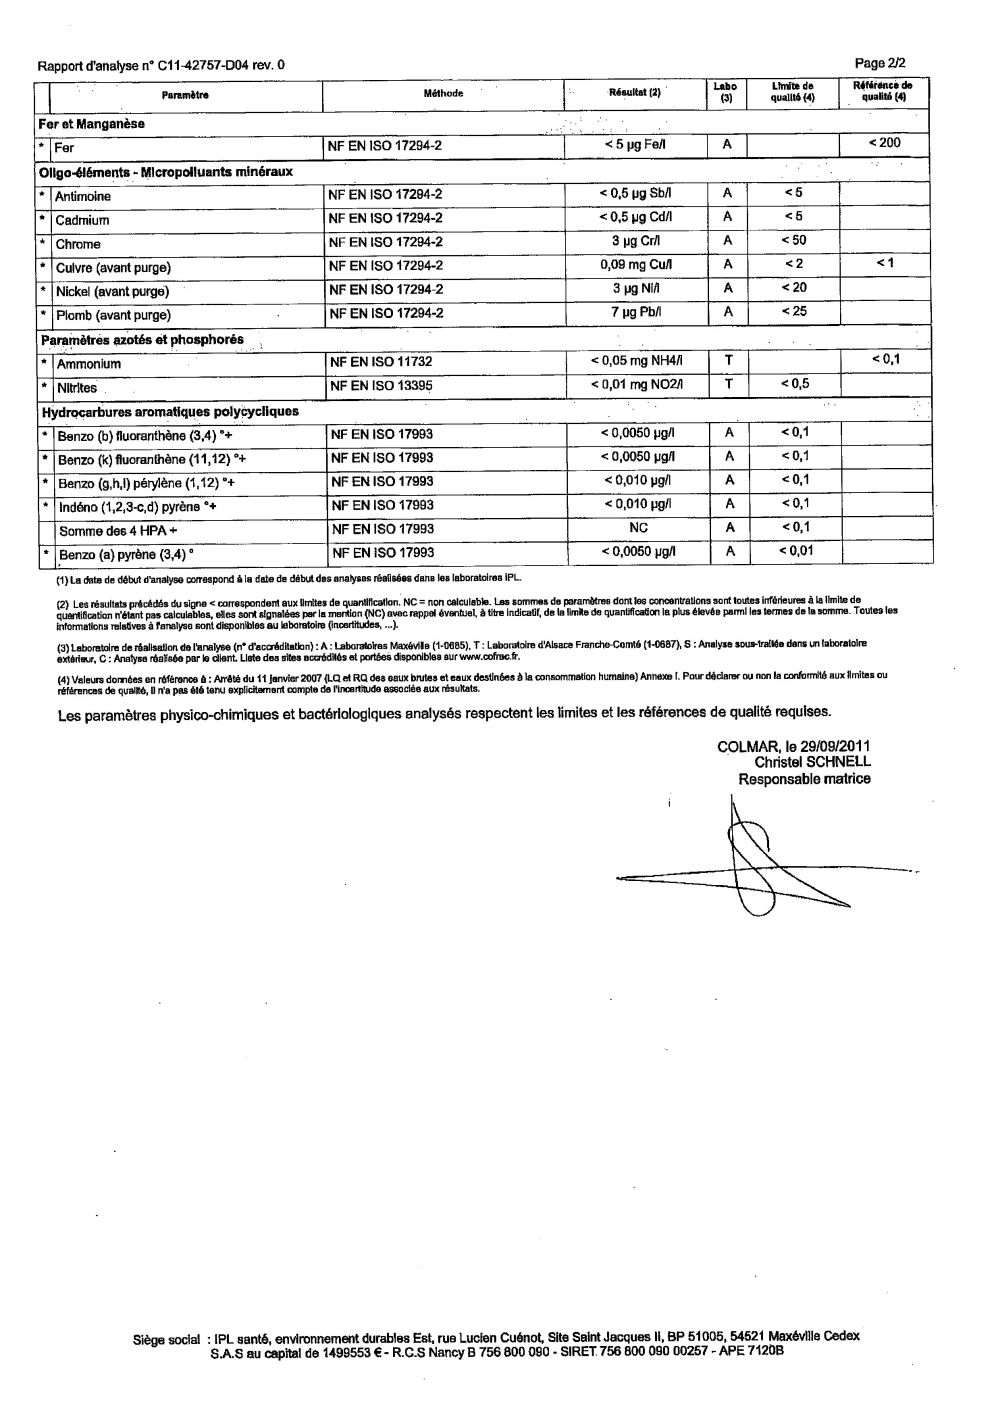 Rapport d'analyse d'eau potable n°C11-42757-D04 du 29/09/2011